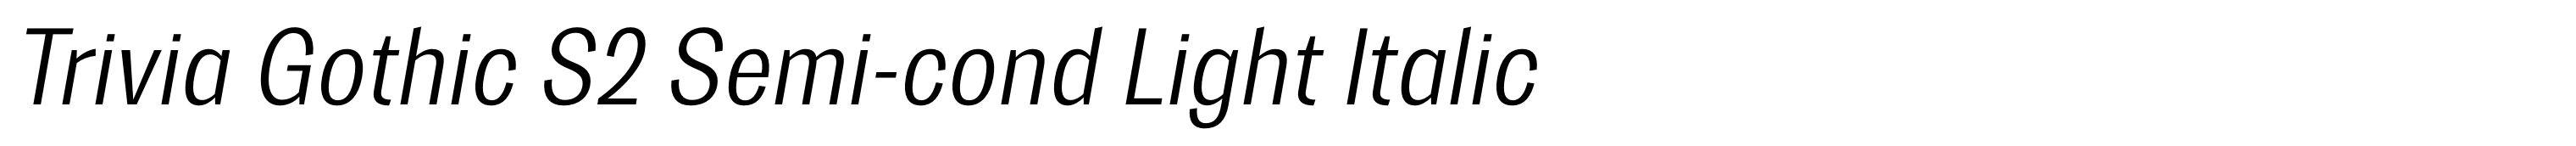 Trivia Gothic S2 Semi-cond Light Italic